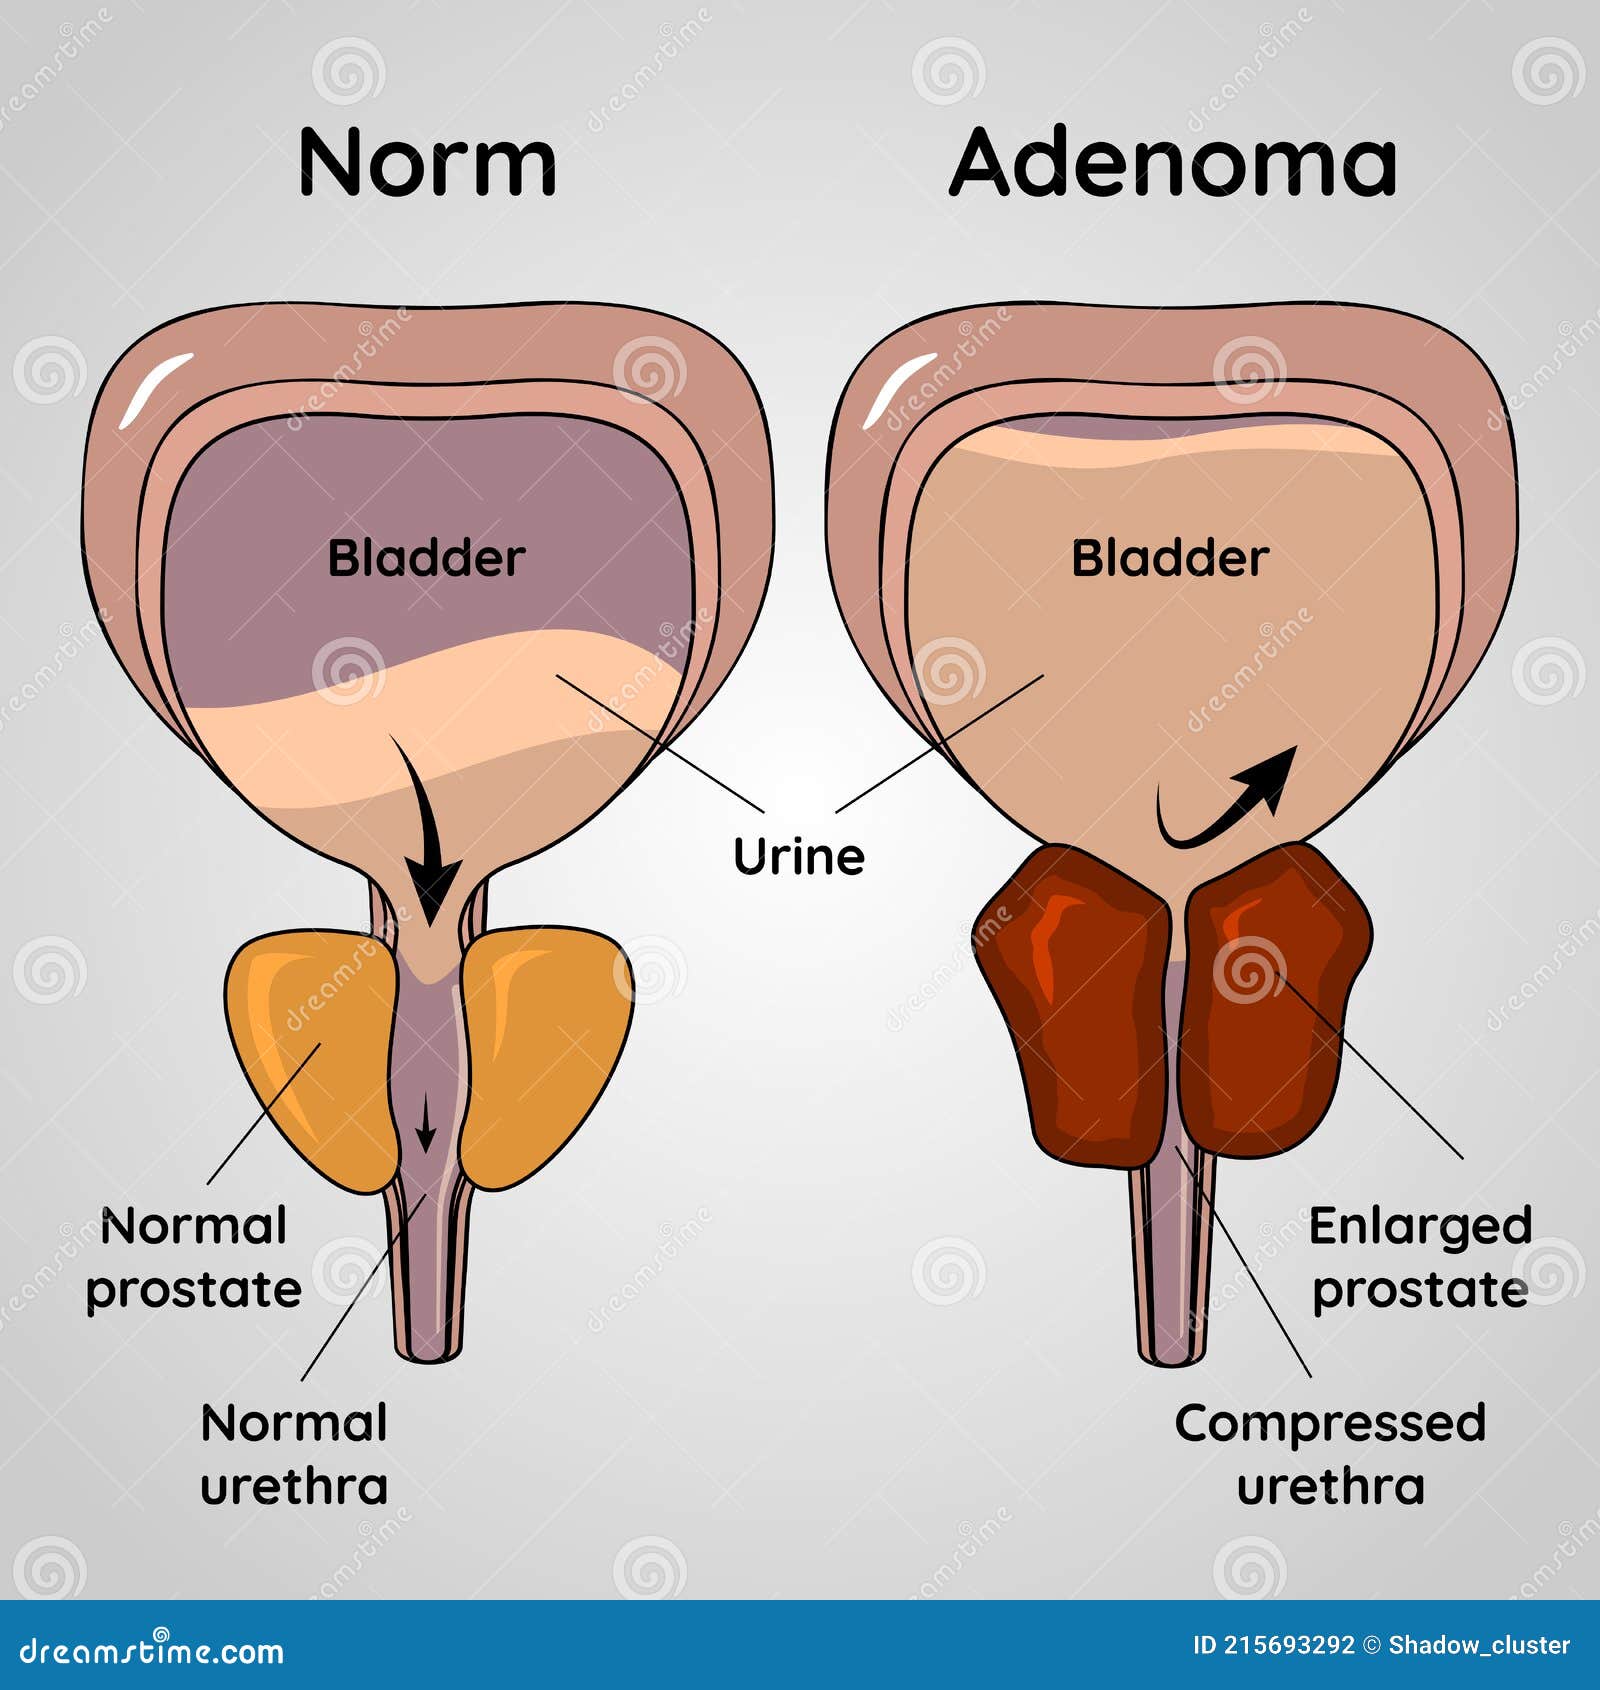 adenoma prostate